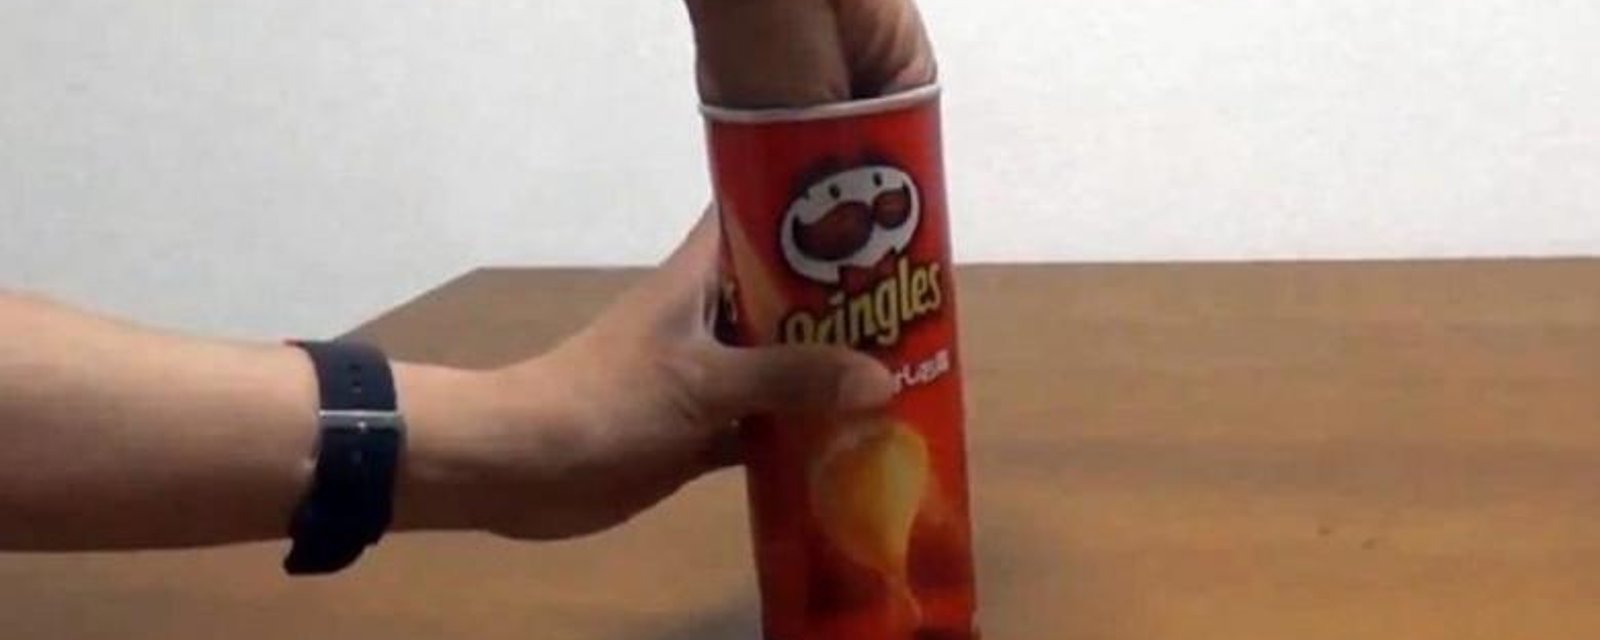 Une astuce brillante pour manger des Chips Pringles! 